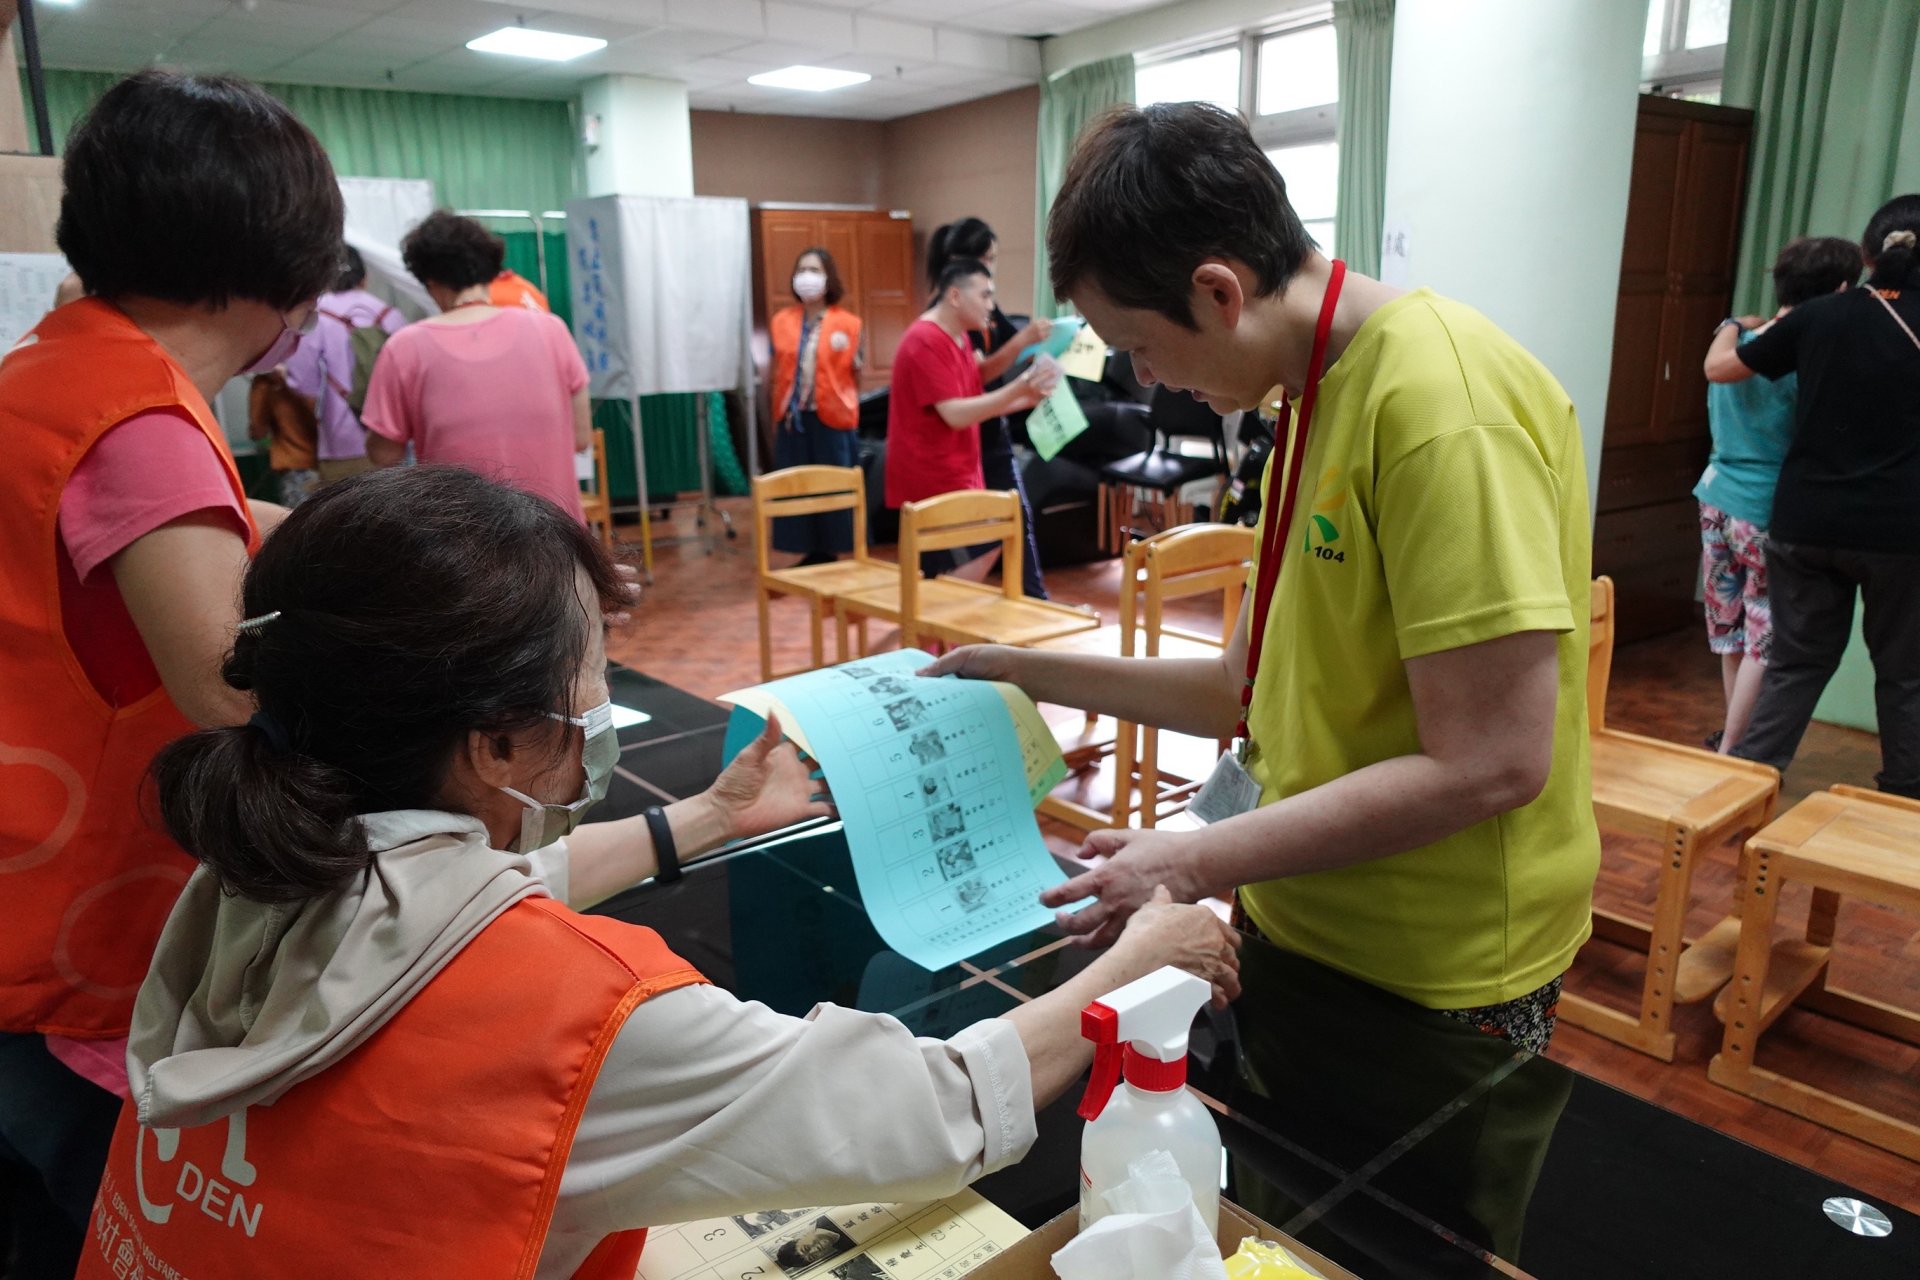 伊甸宜蘭教養院今(30)日舉辦模擬選舉，住民一早帶著身分證、印章、投票通知單前往投票所，實踐公民投票權。